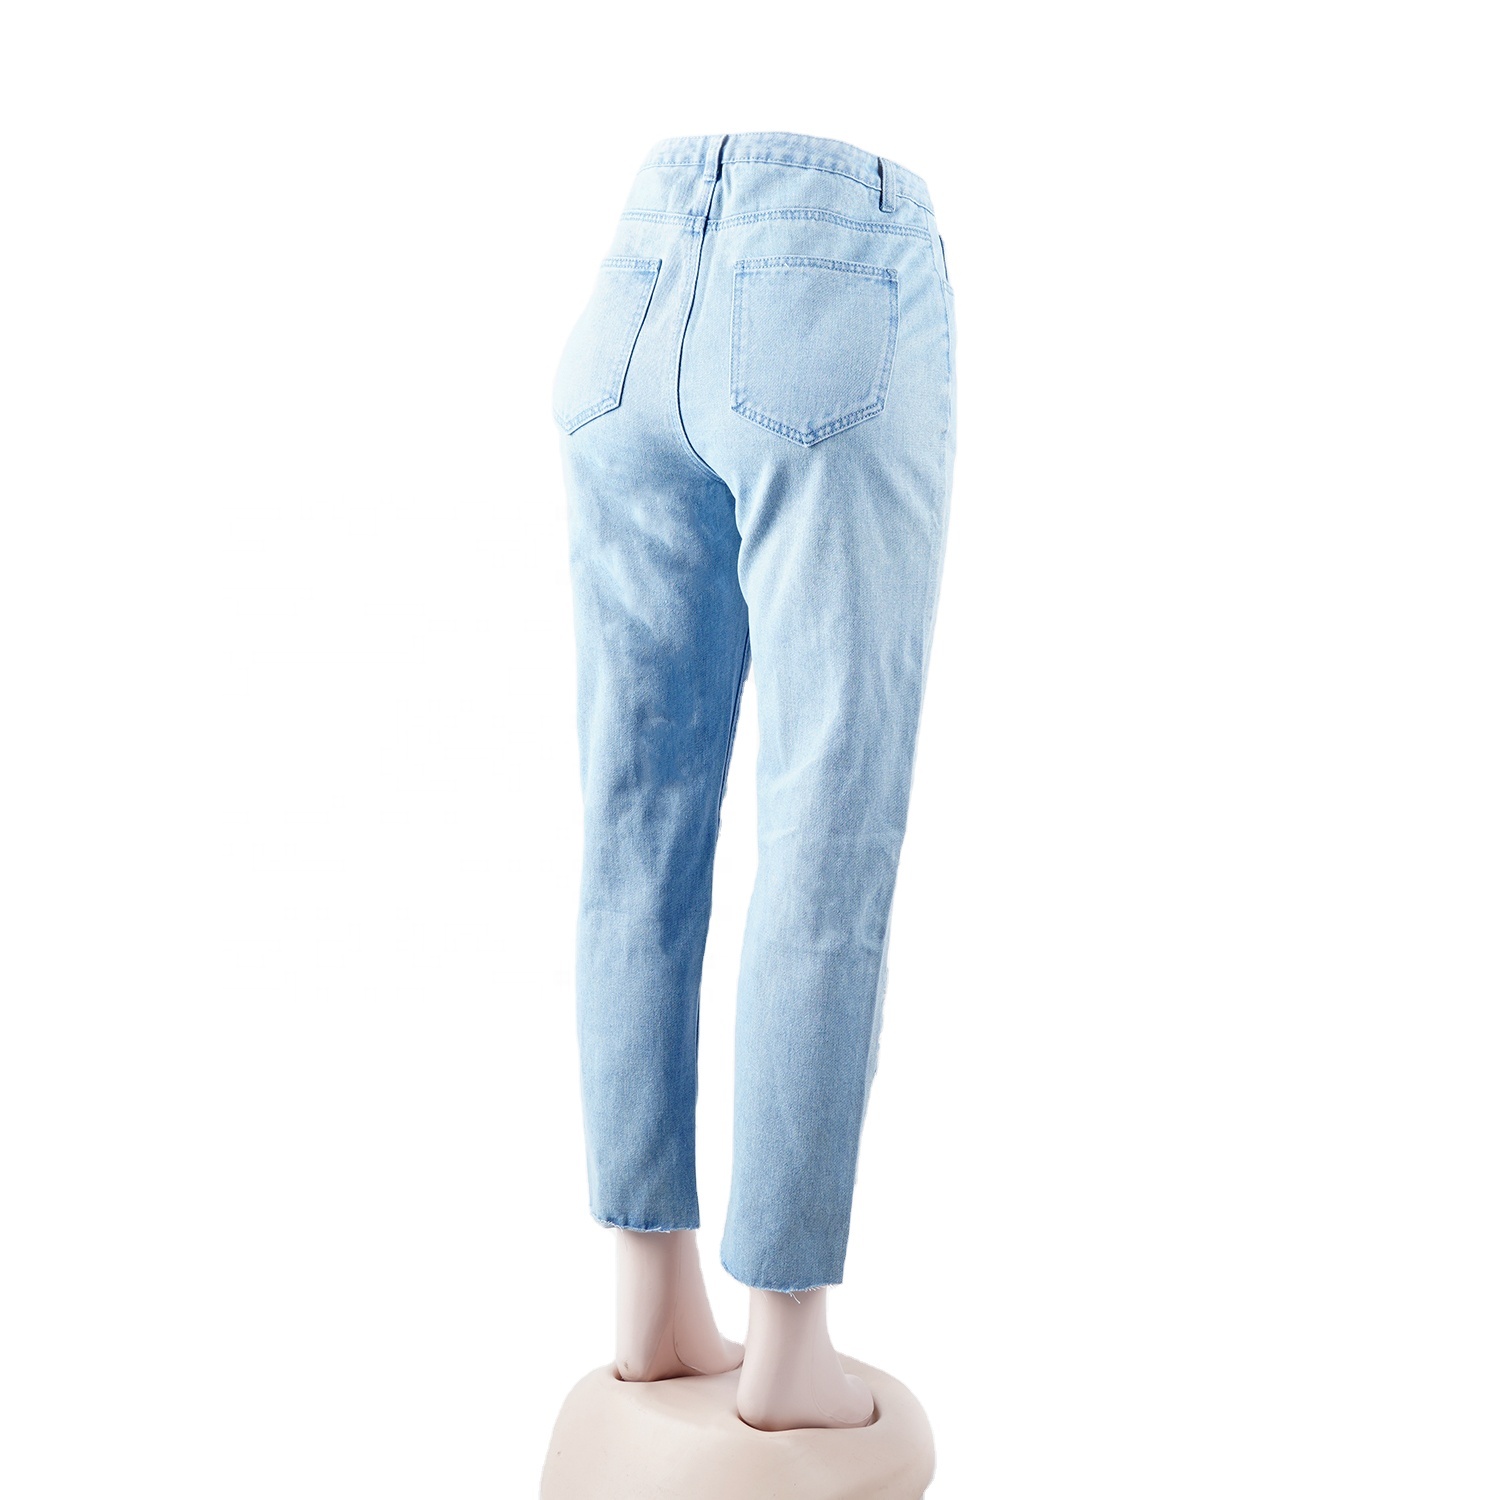 SKYKINGDOM american hot sale jeans streetwear casual light blue trousers ripped boyfriend jeans for woman